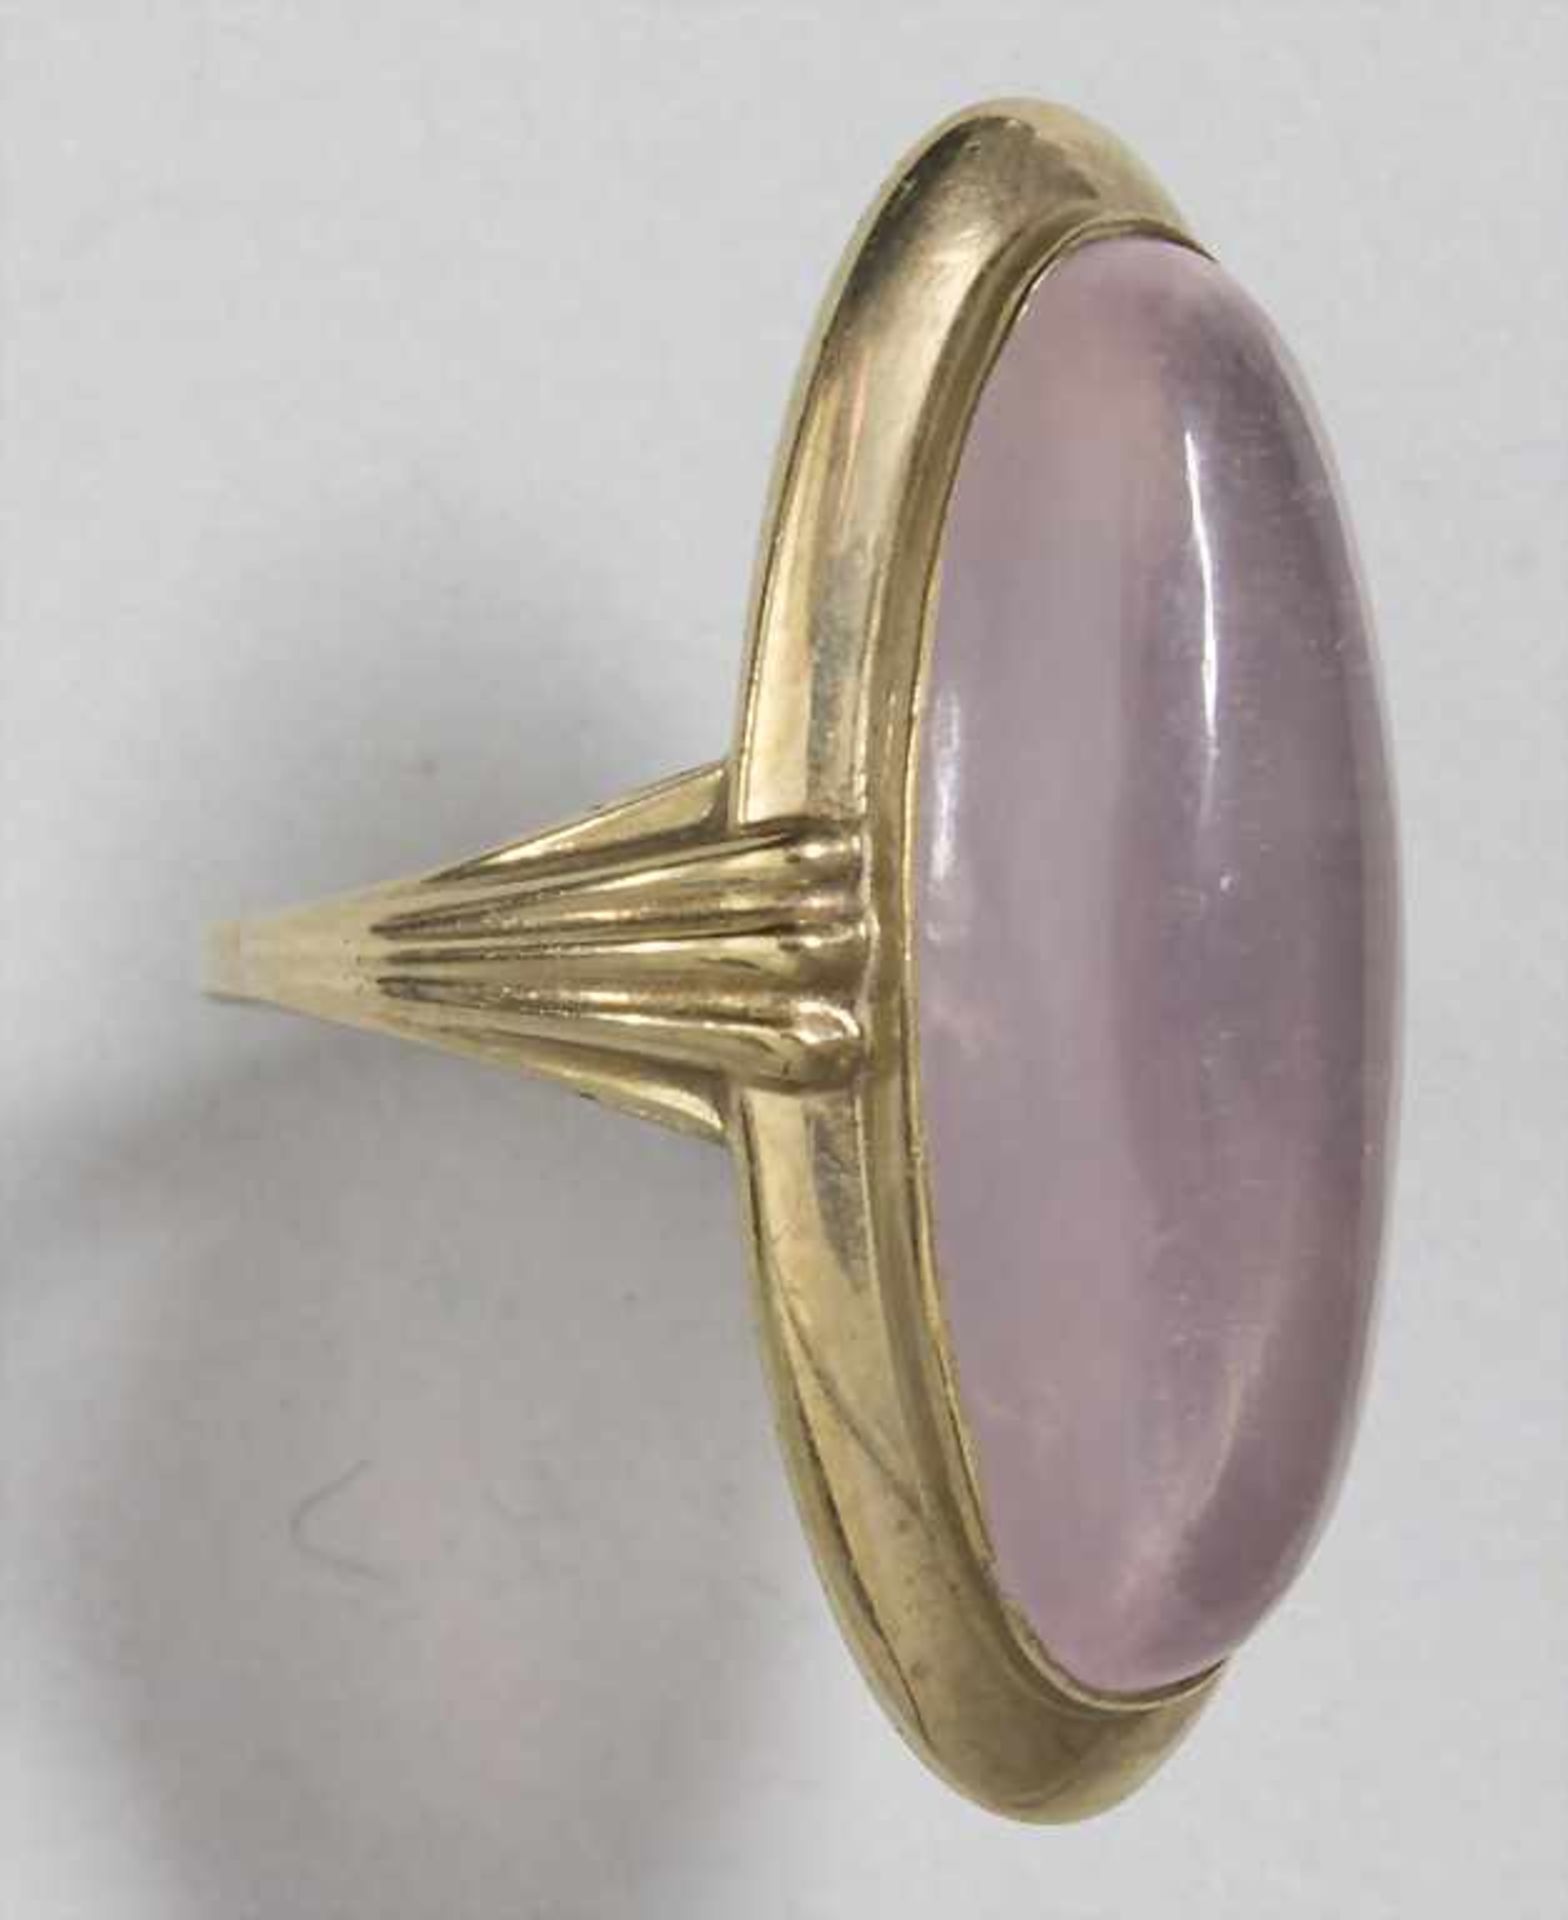 Damenring mit Rosenquarz / A ladies ring with rose quartz - Image 2 of 3